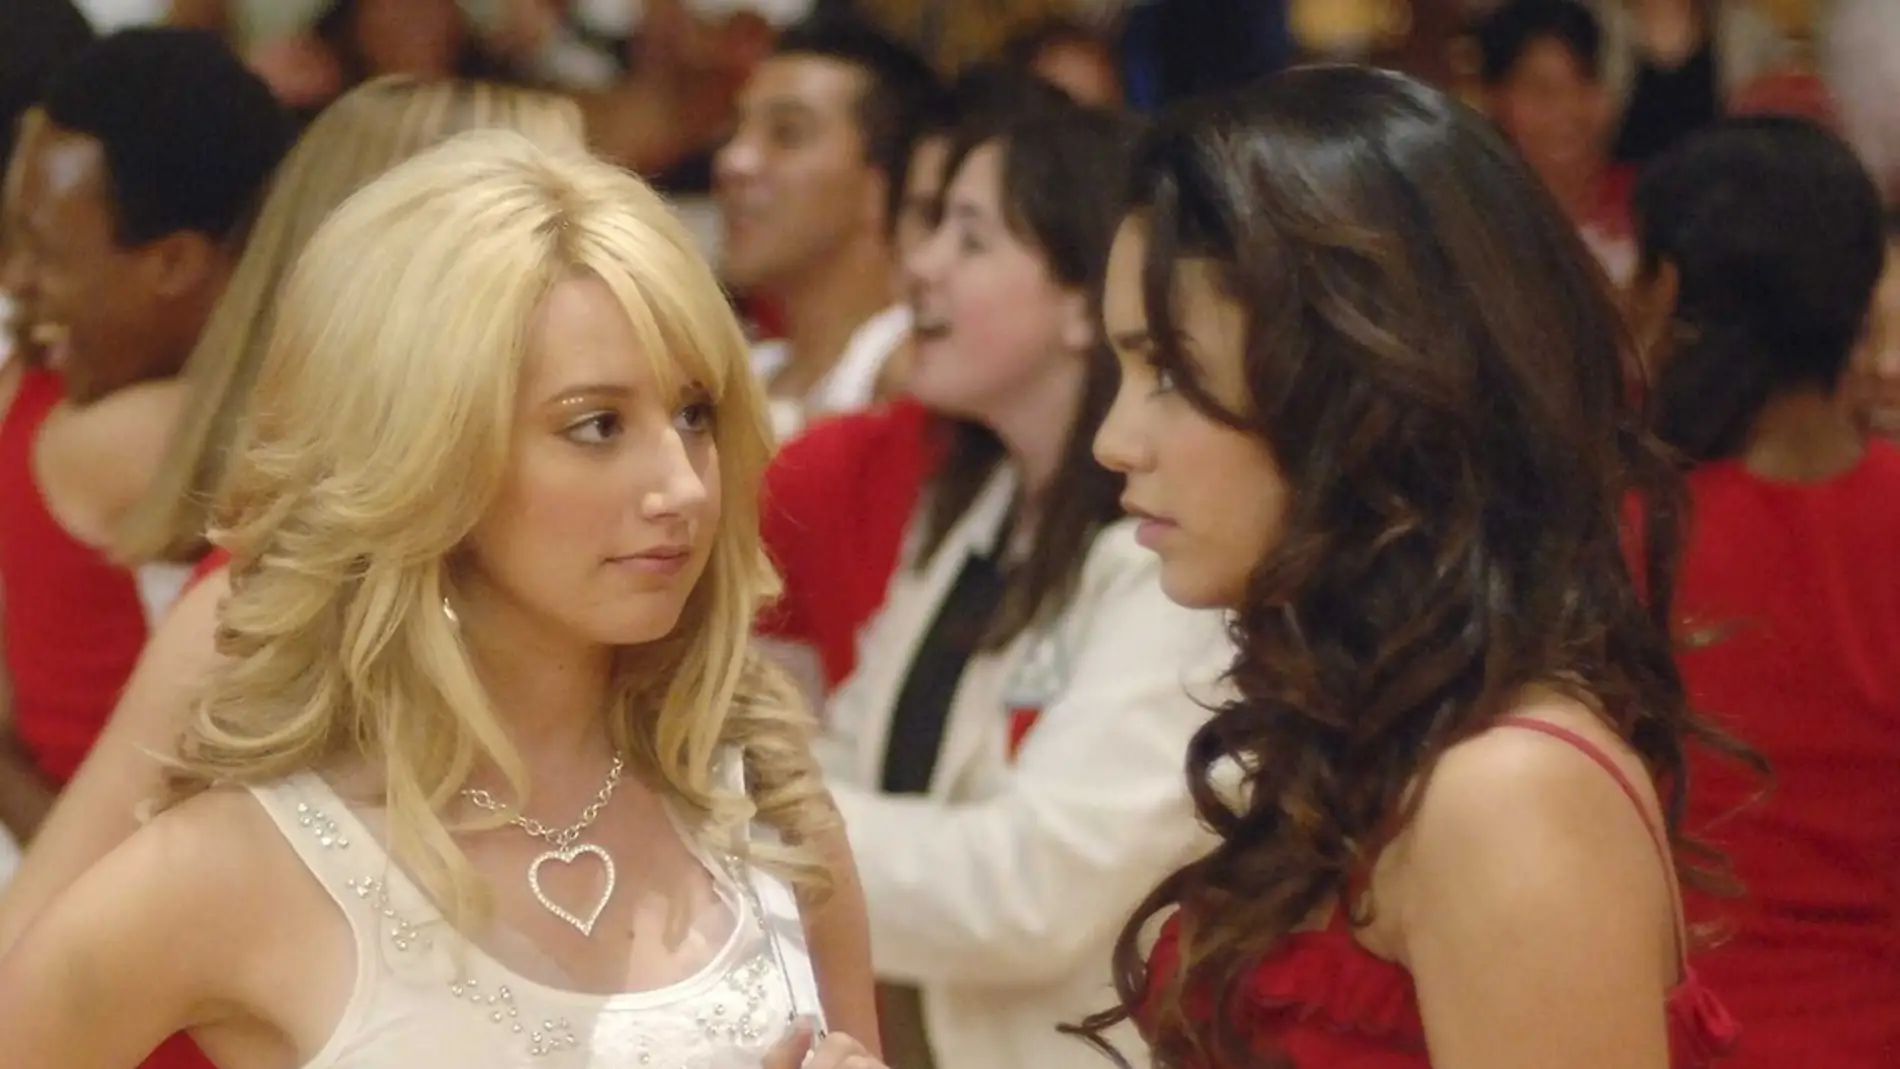 Ashley Tisdale y Vanessa Hudgens en 'High School Musical'